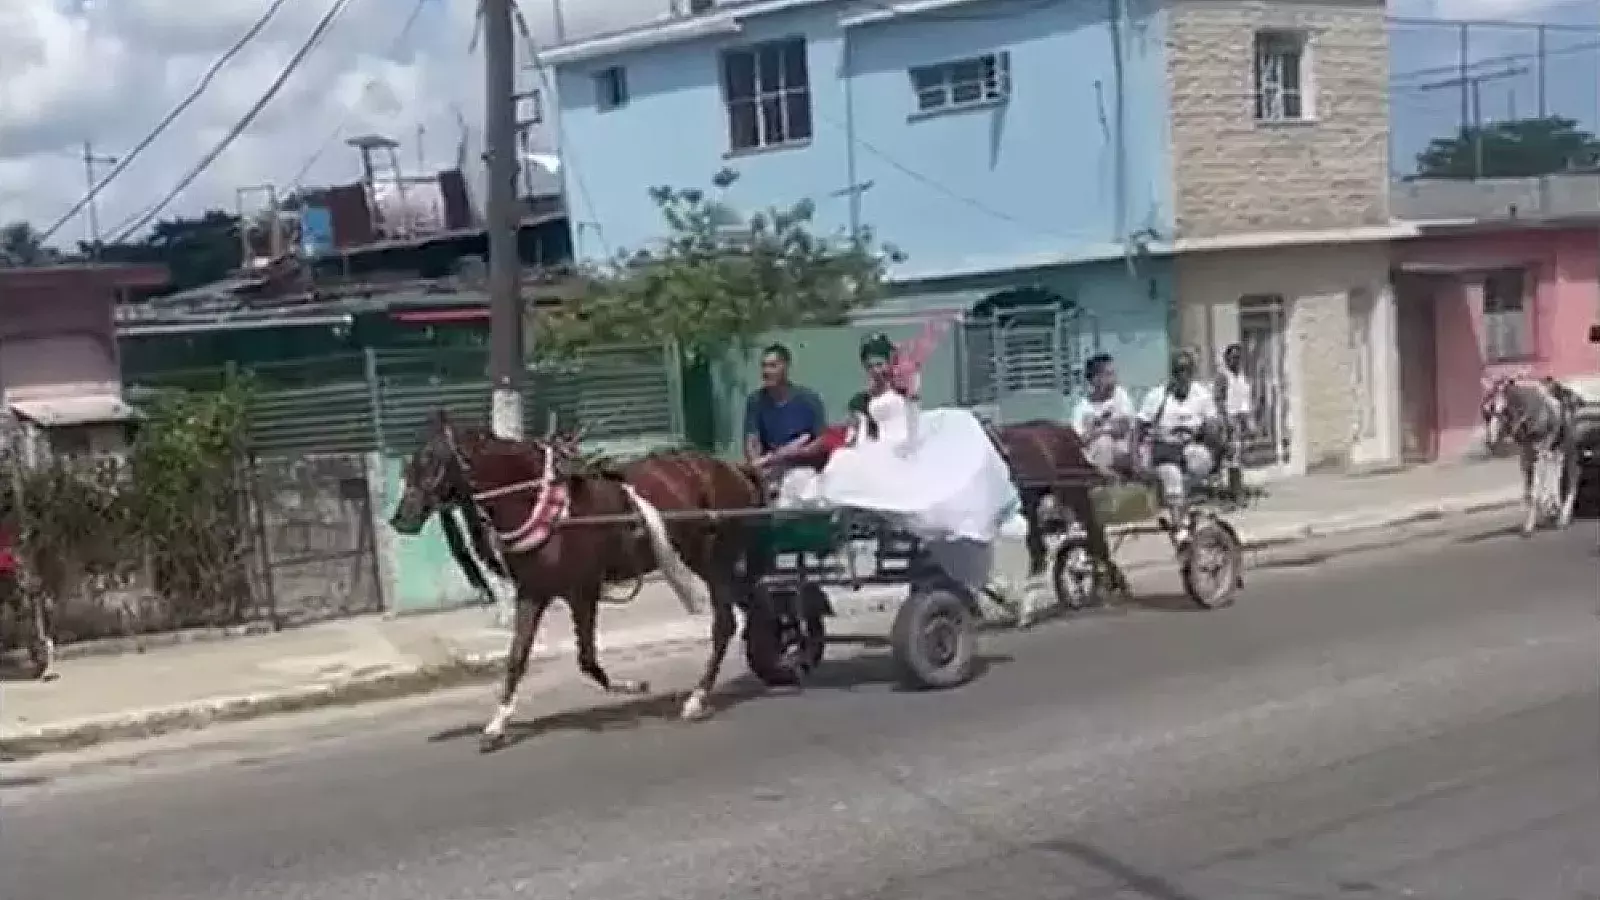 Boda a caballo por falta de gasolina en Cuba